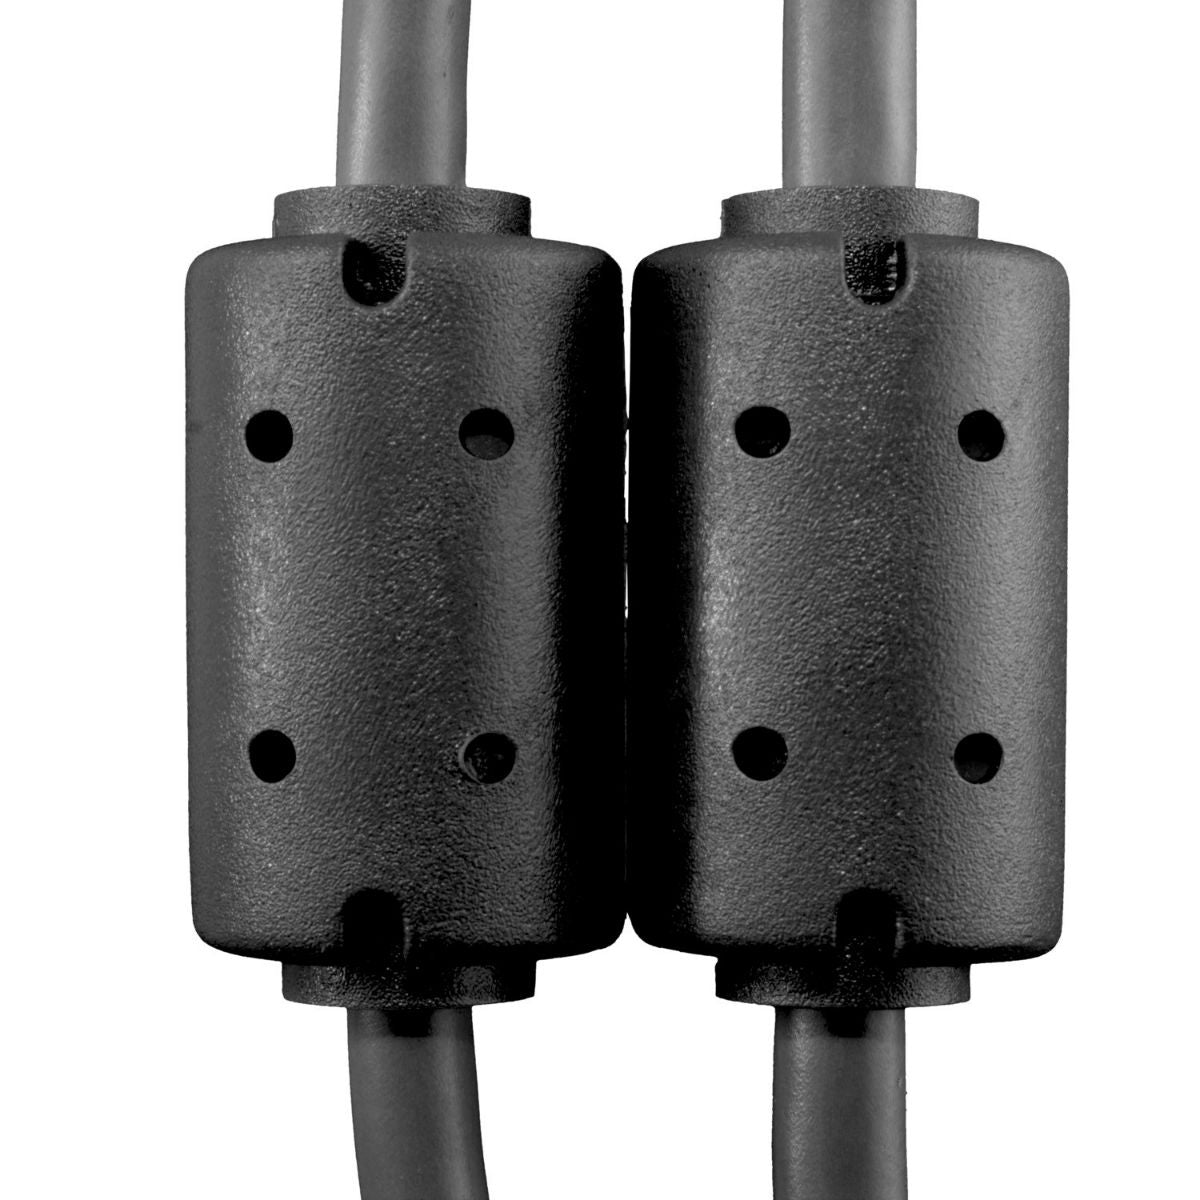 UDG USB Cable A-B 3m Black Angled U95006BL